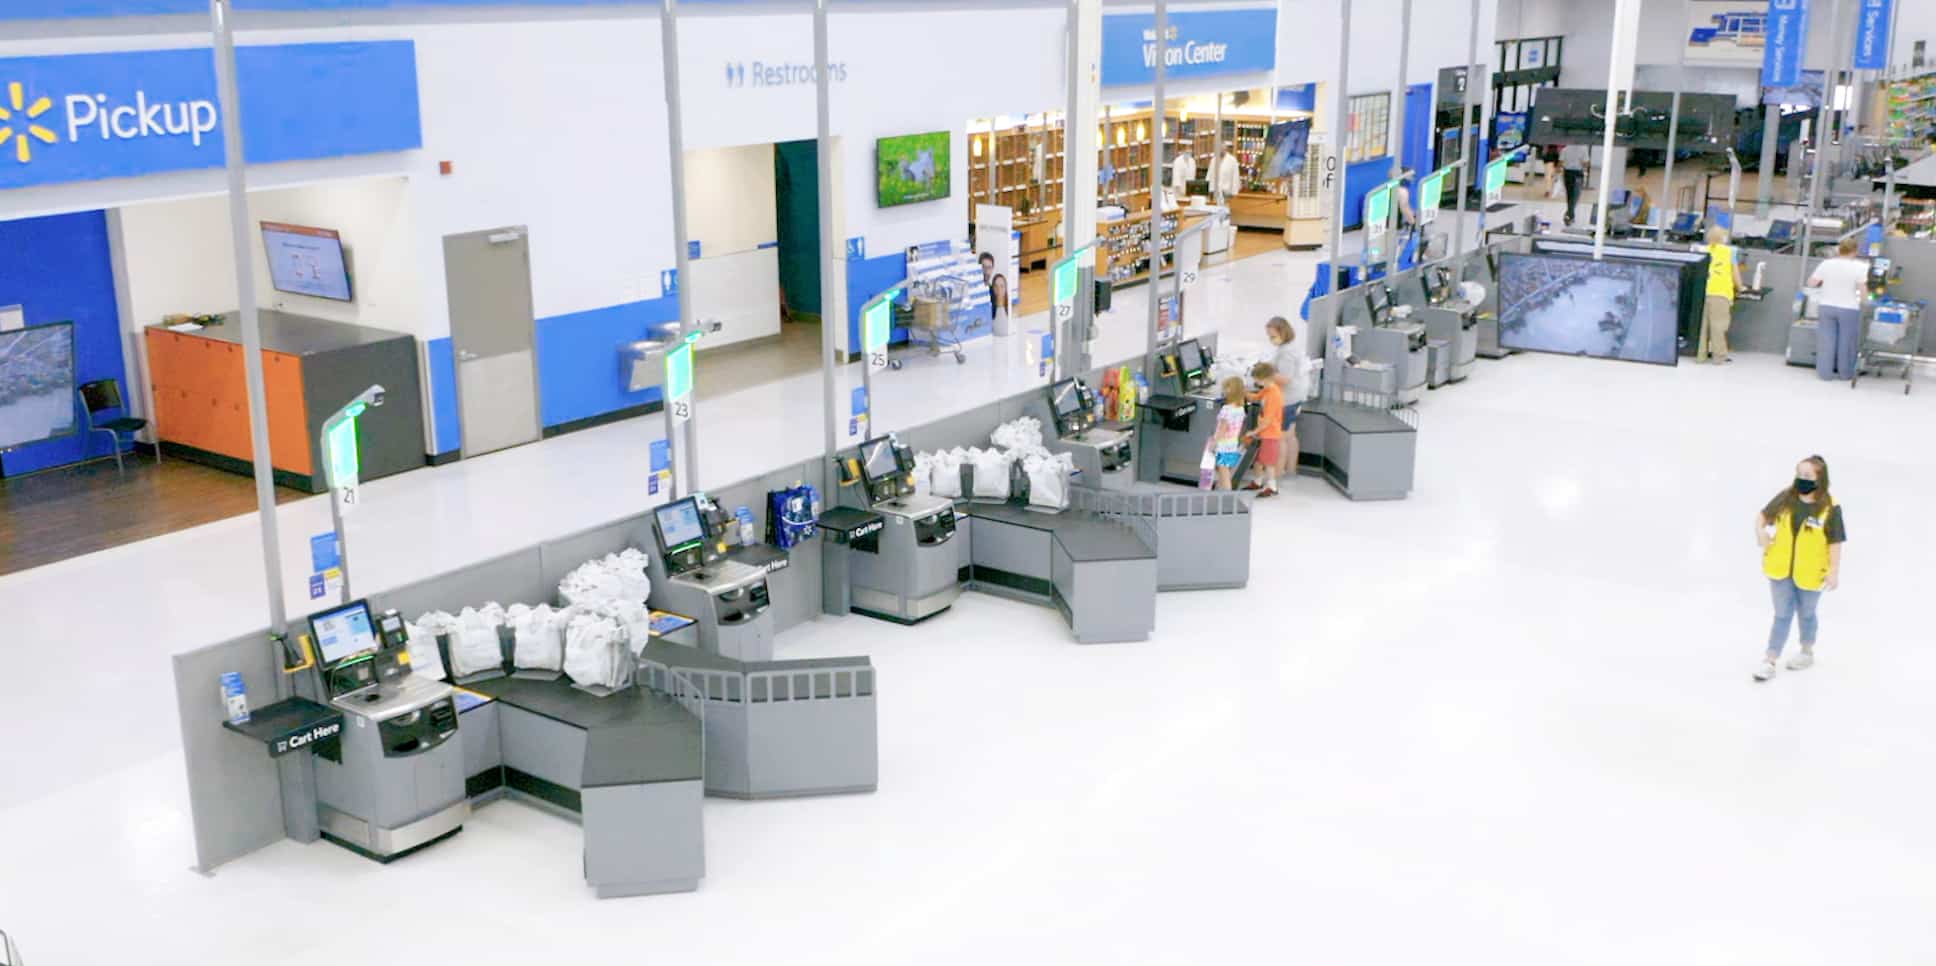 Les consommateurs doivent de plus en plus utiliser les caisses en libre-service et emballer leur marchandise, comme on le voit ici dans un Walmart.